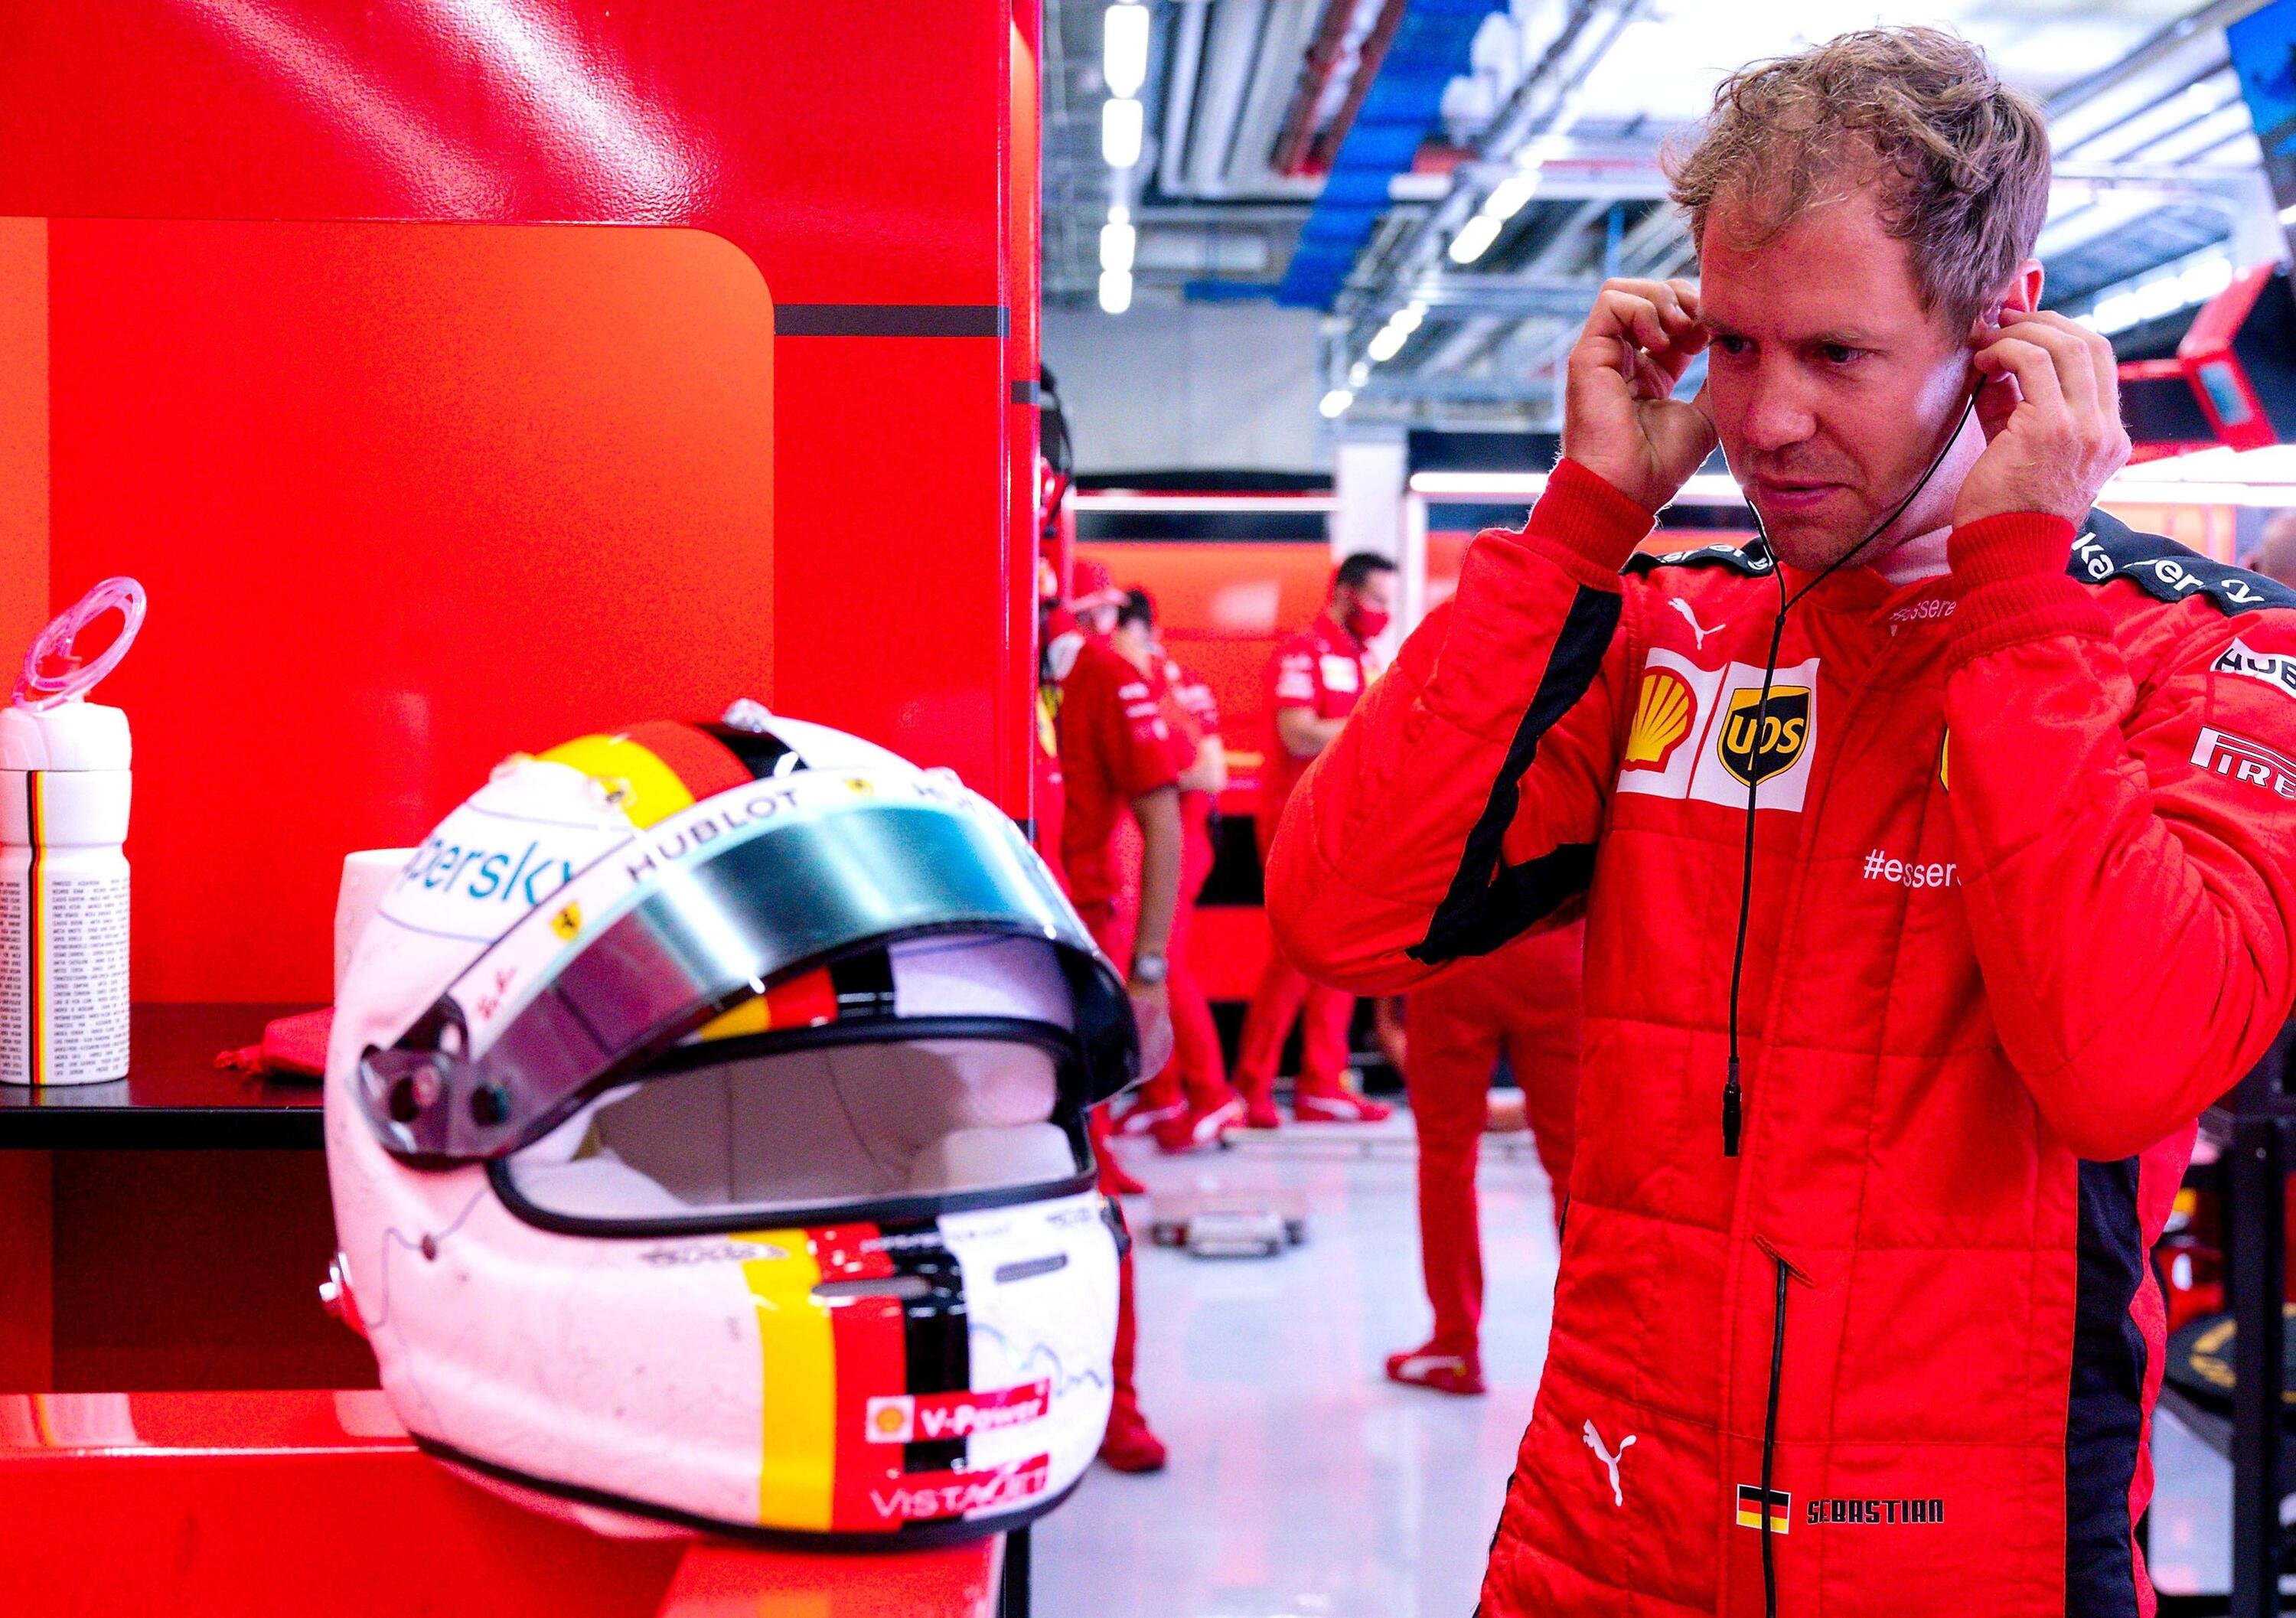 Ferrari e Vettel si separeranno prima? Dall&rsquo;audio del team radio qualche sospetto viene